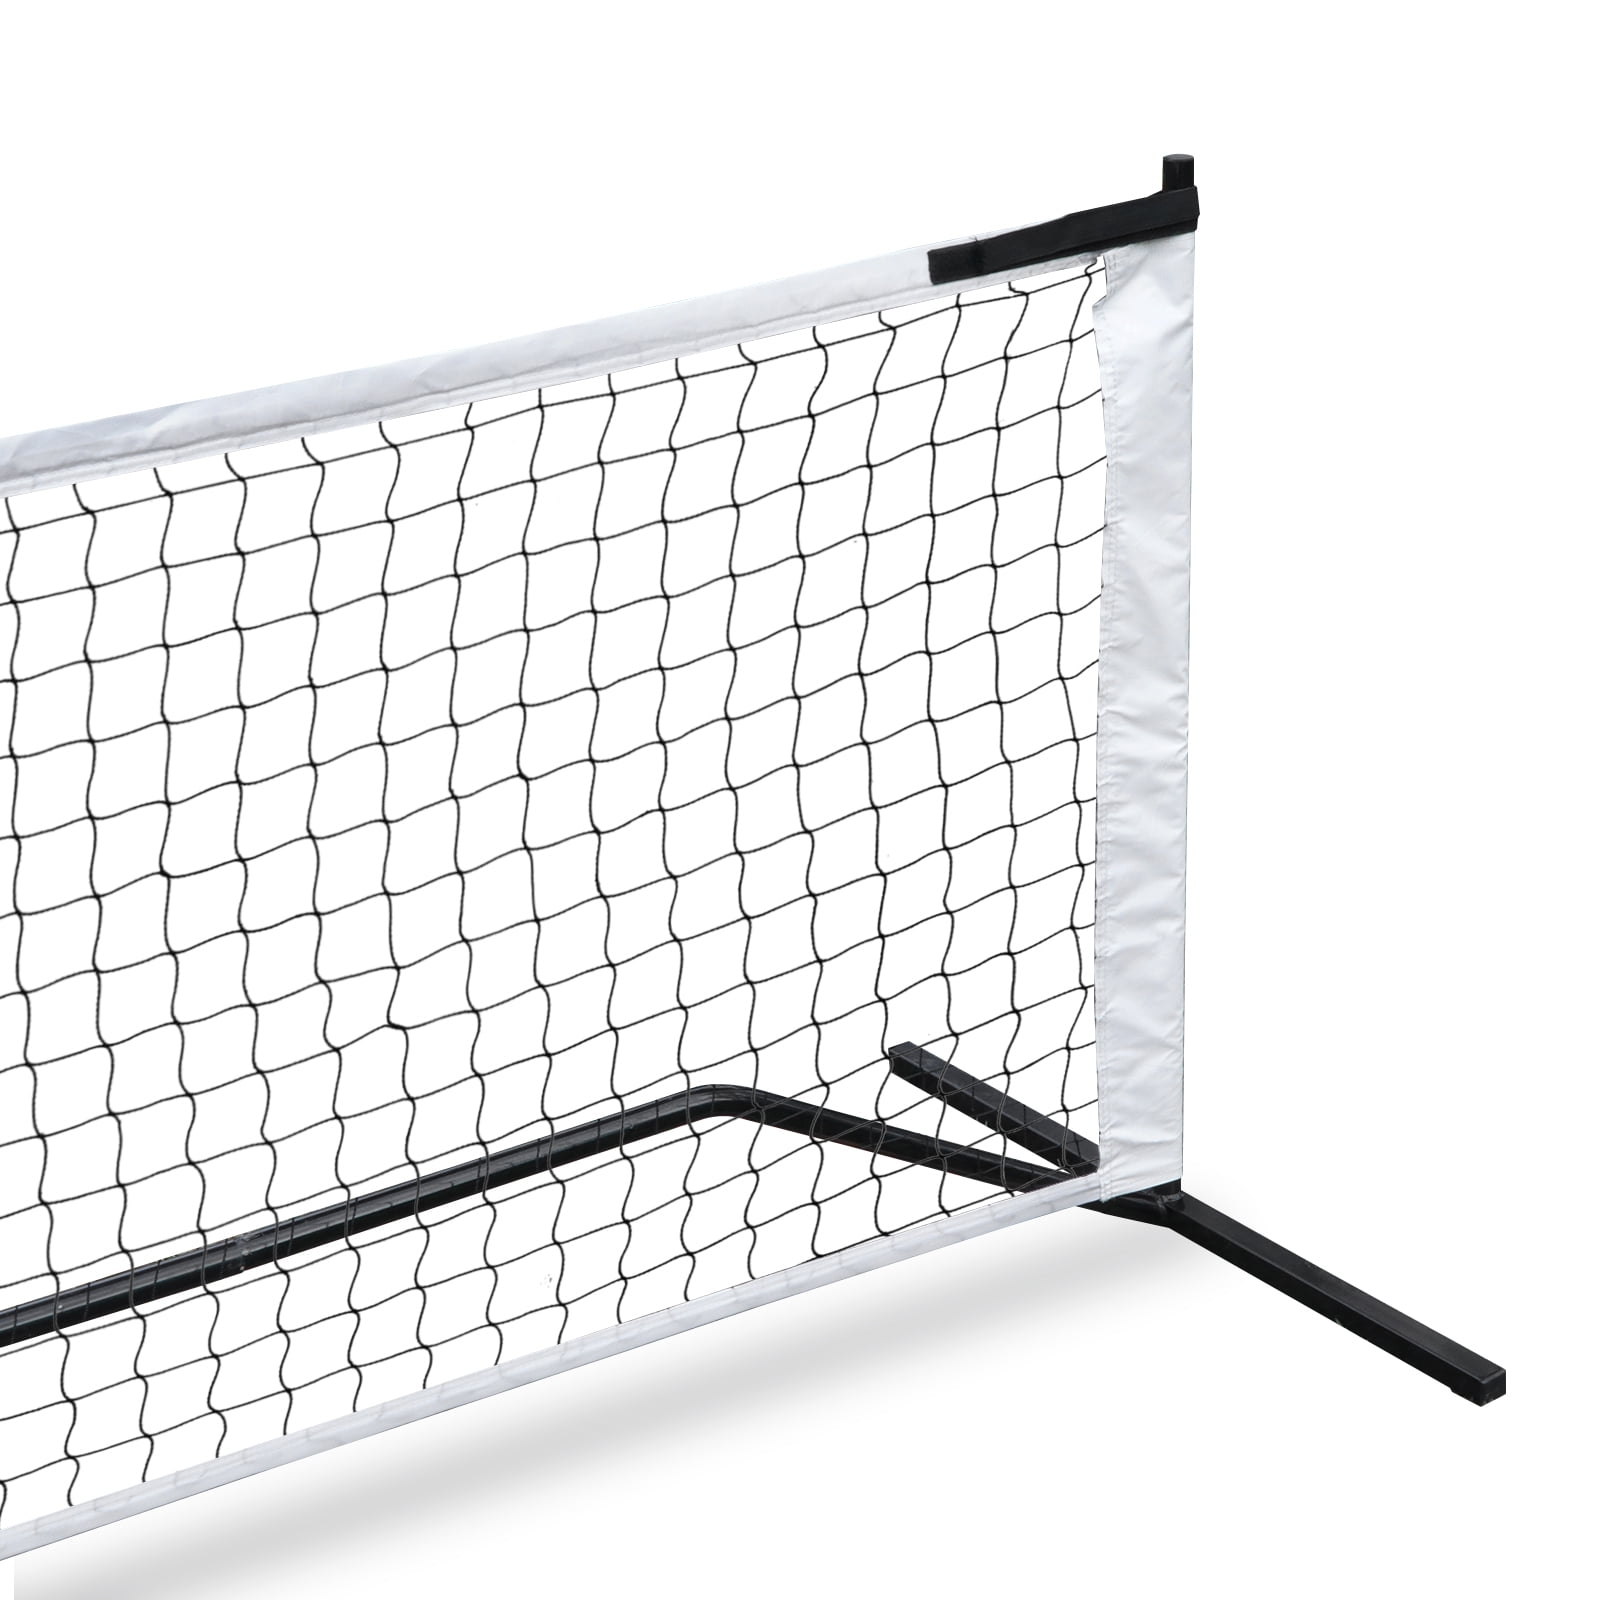 Details about   22FT Pickleball Tennis Net W/Stand & Net &Carry Bag Steel Poles for Beach Garden 